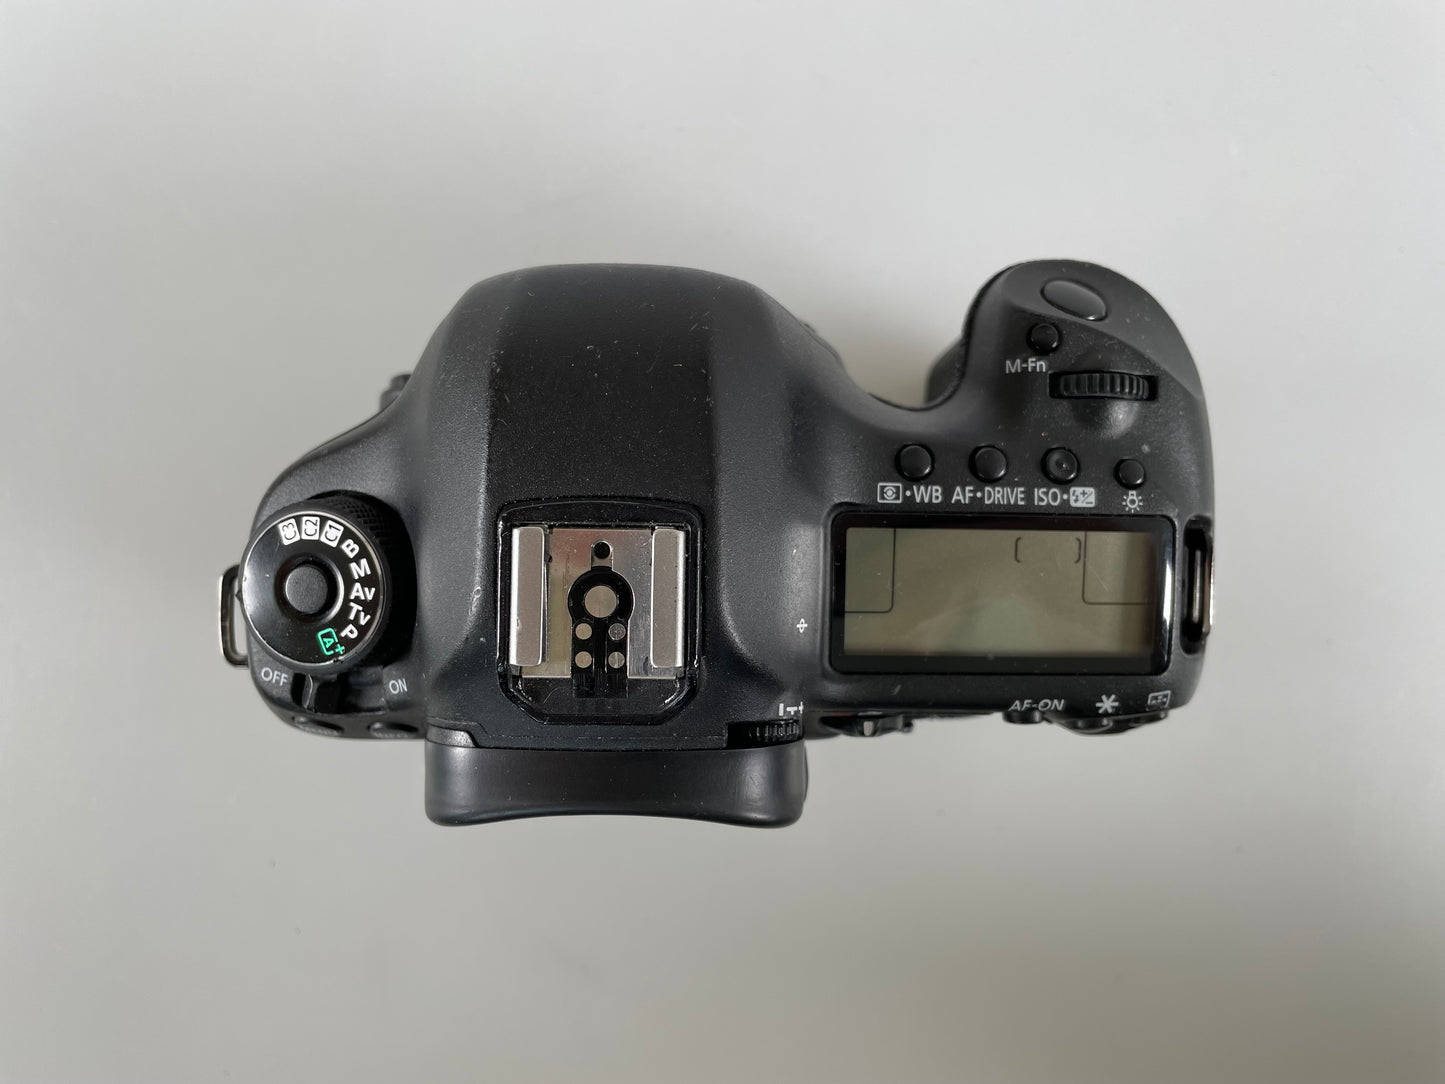 Canon 5d mark iii digital camera SLR Body full frame